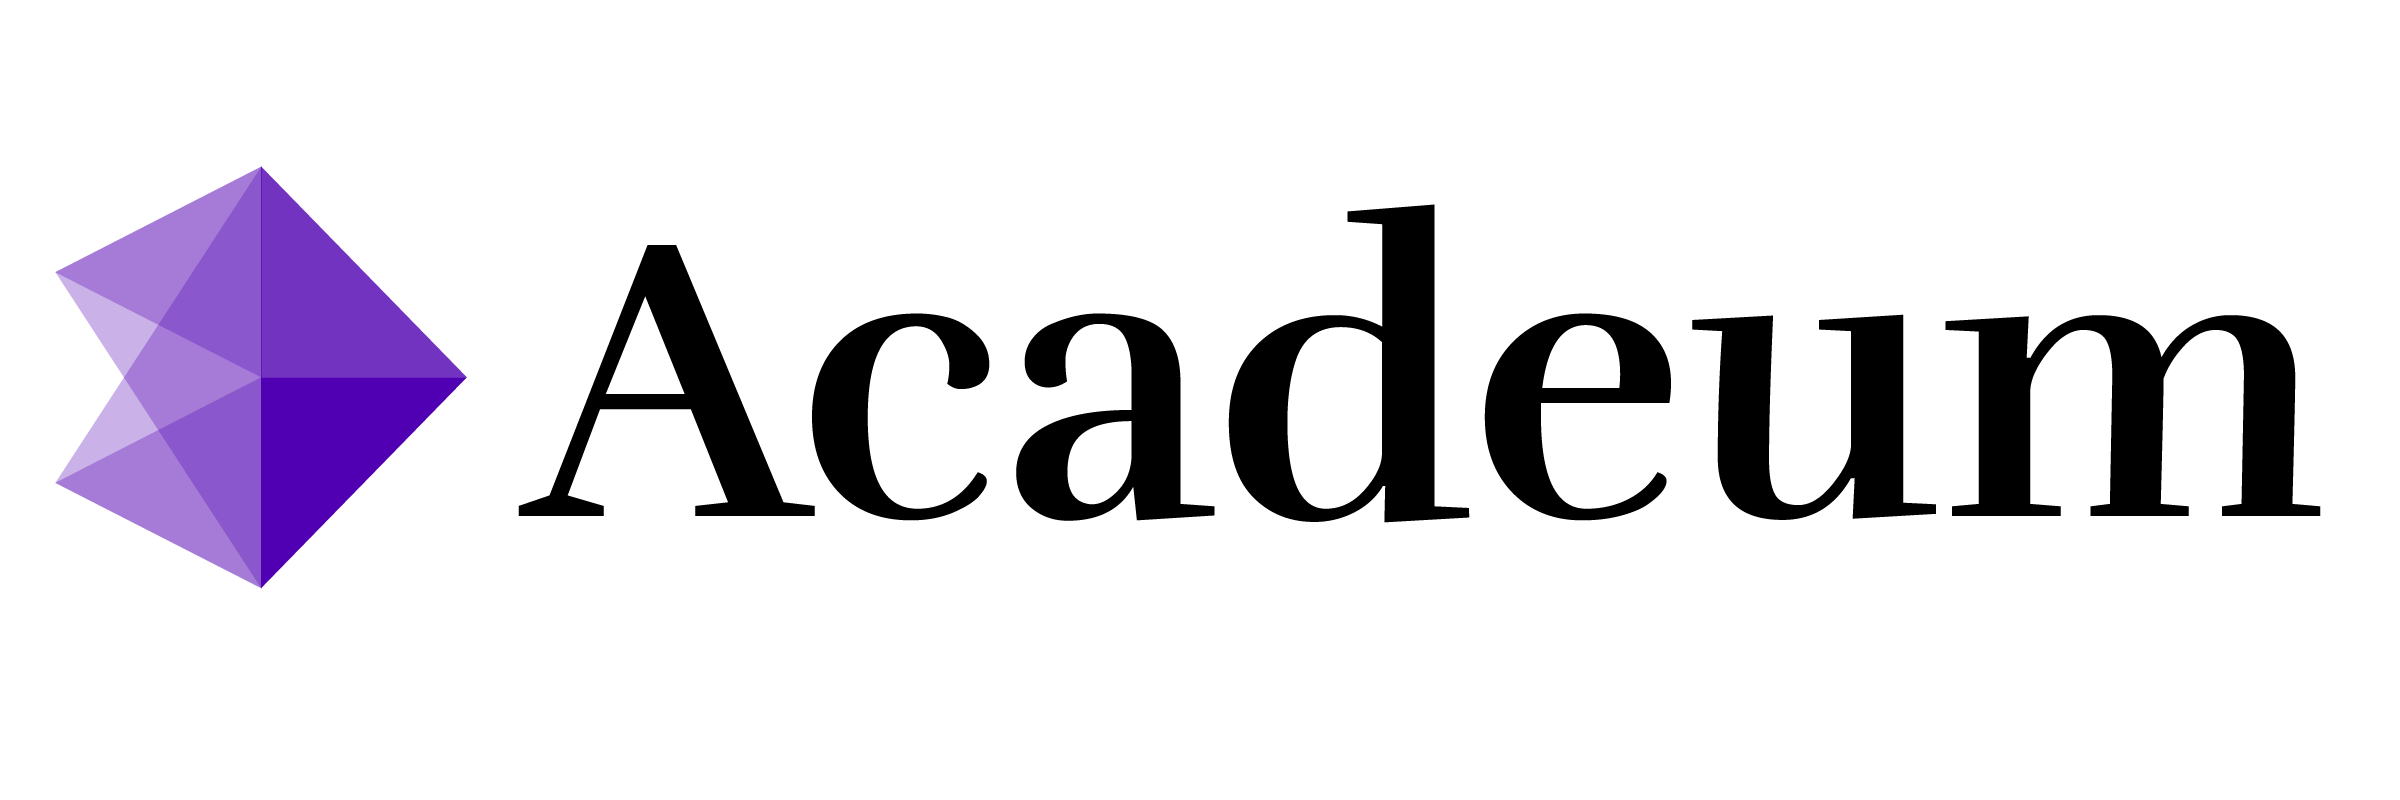 Acadeum_BlackPurple_Logo-01